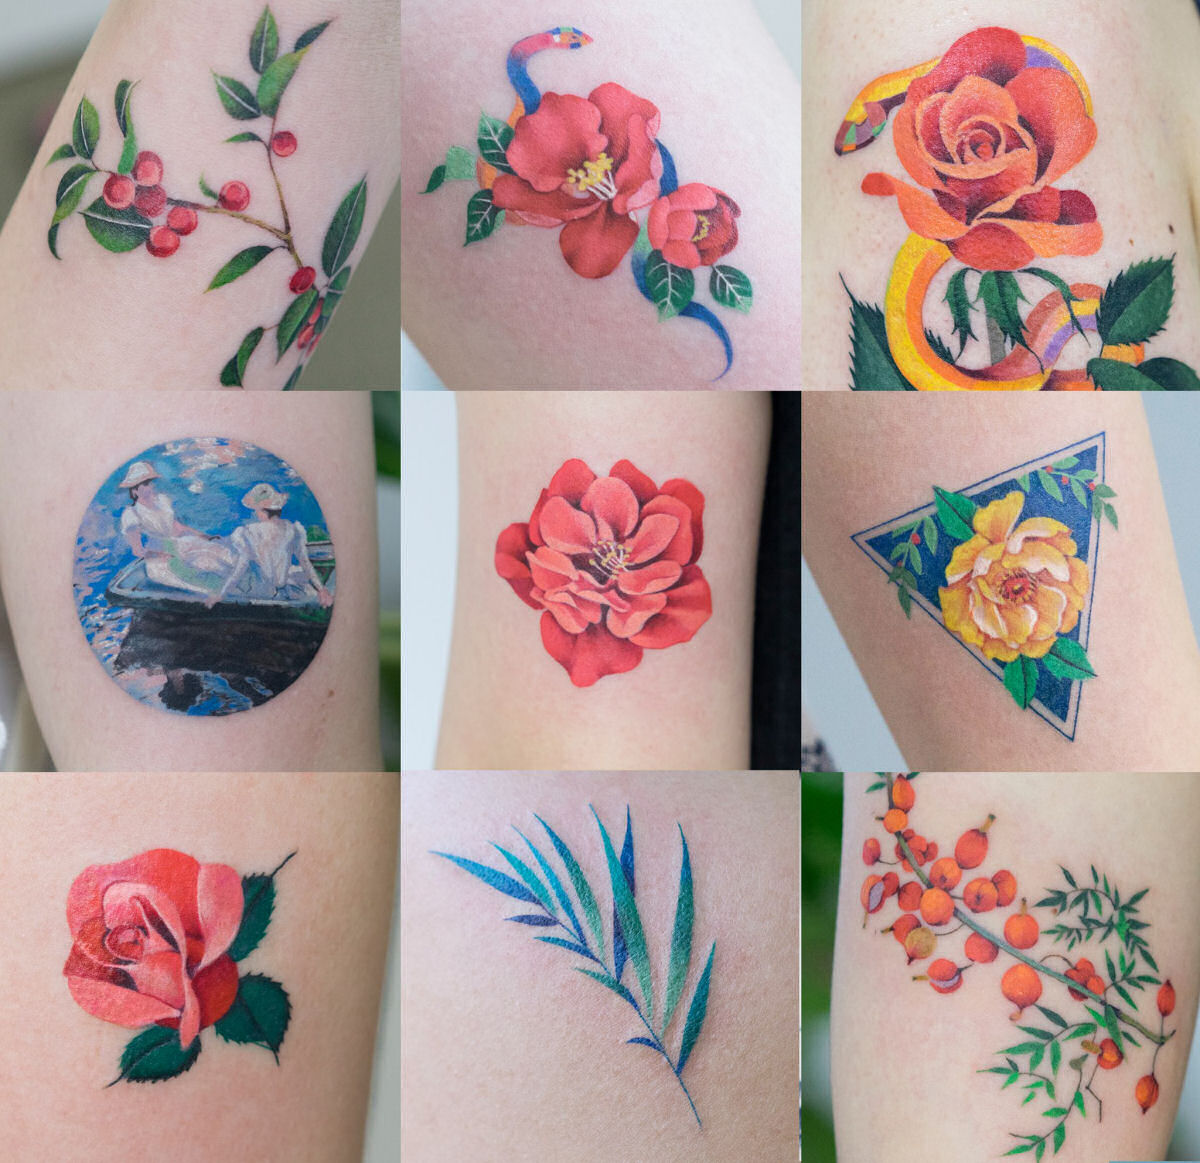 Tatuagens profusamente coloridas assemelham-se a pinturas delicadas de aquarela sobre a pele 01